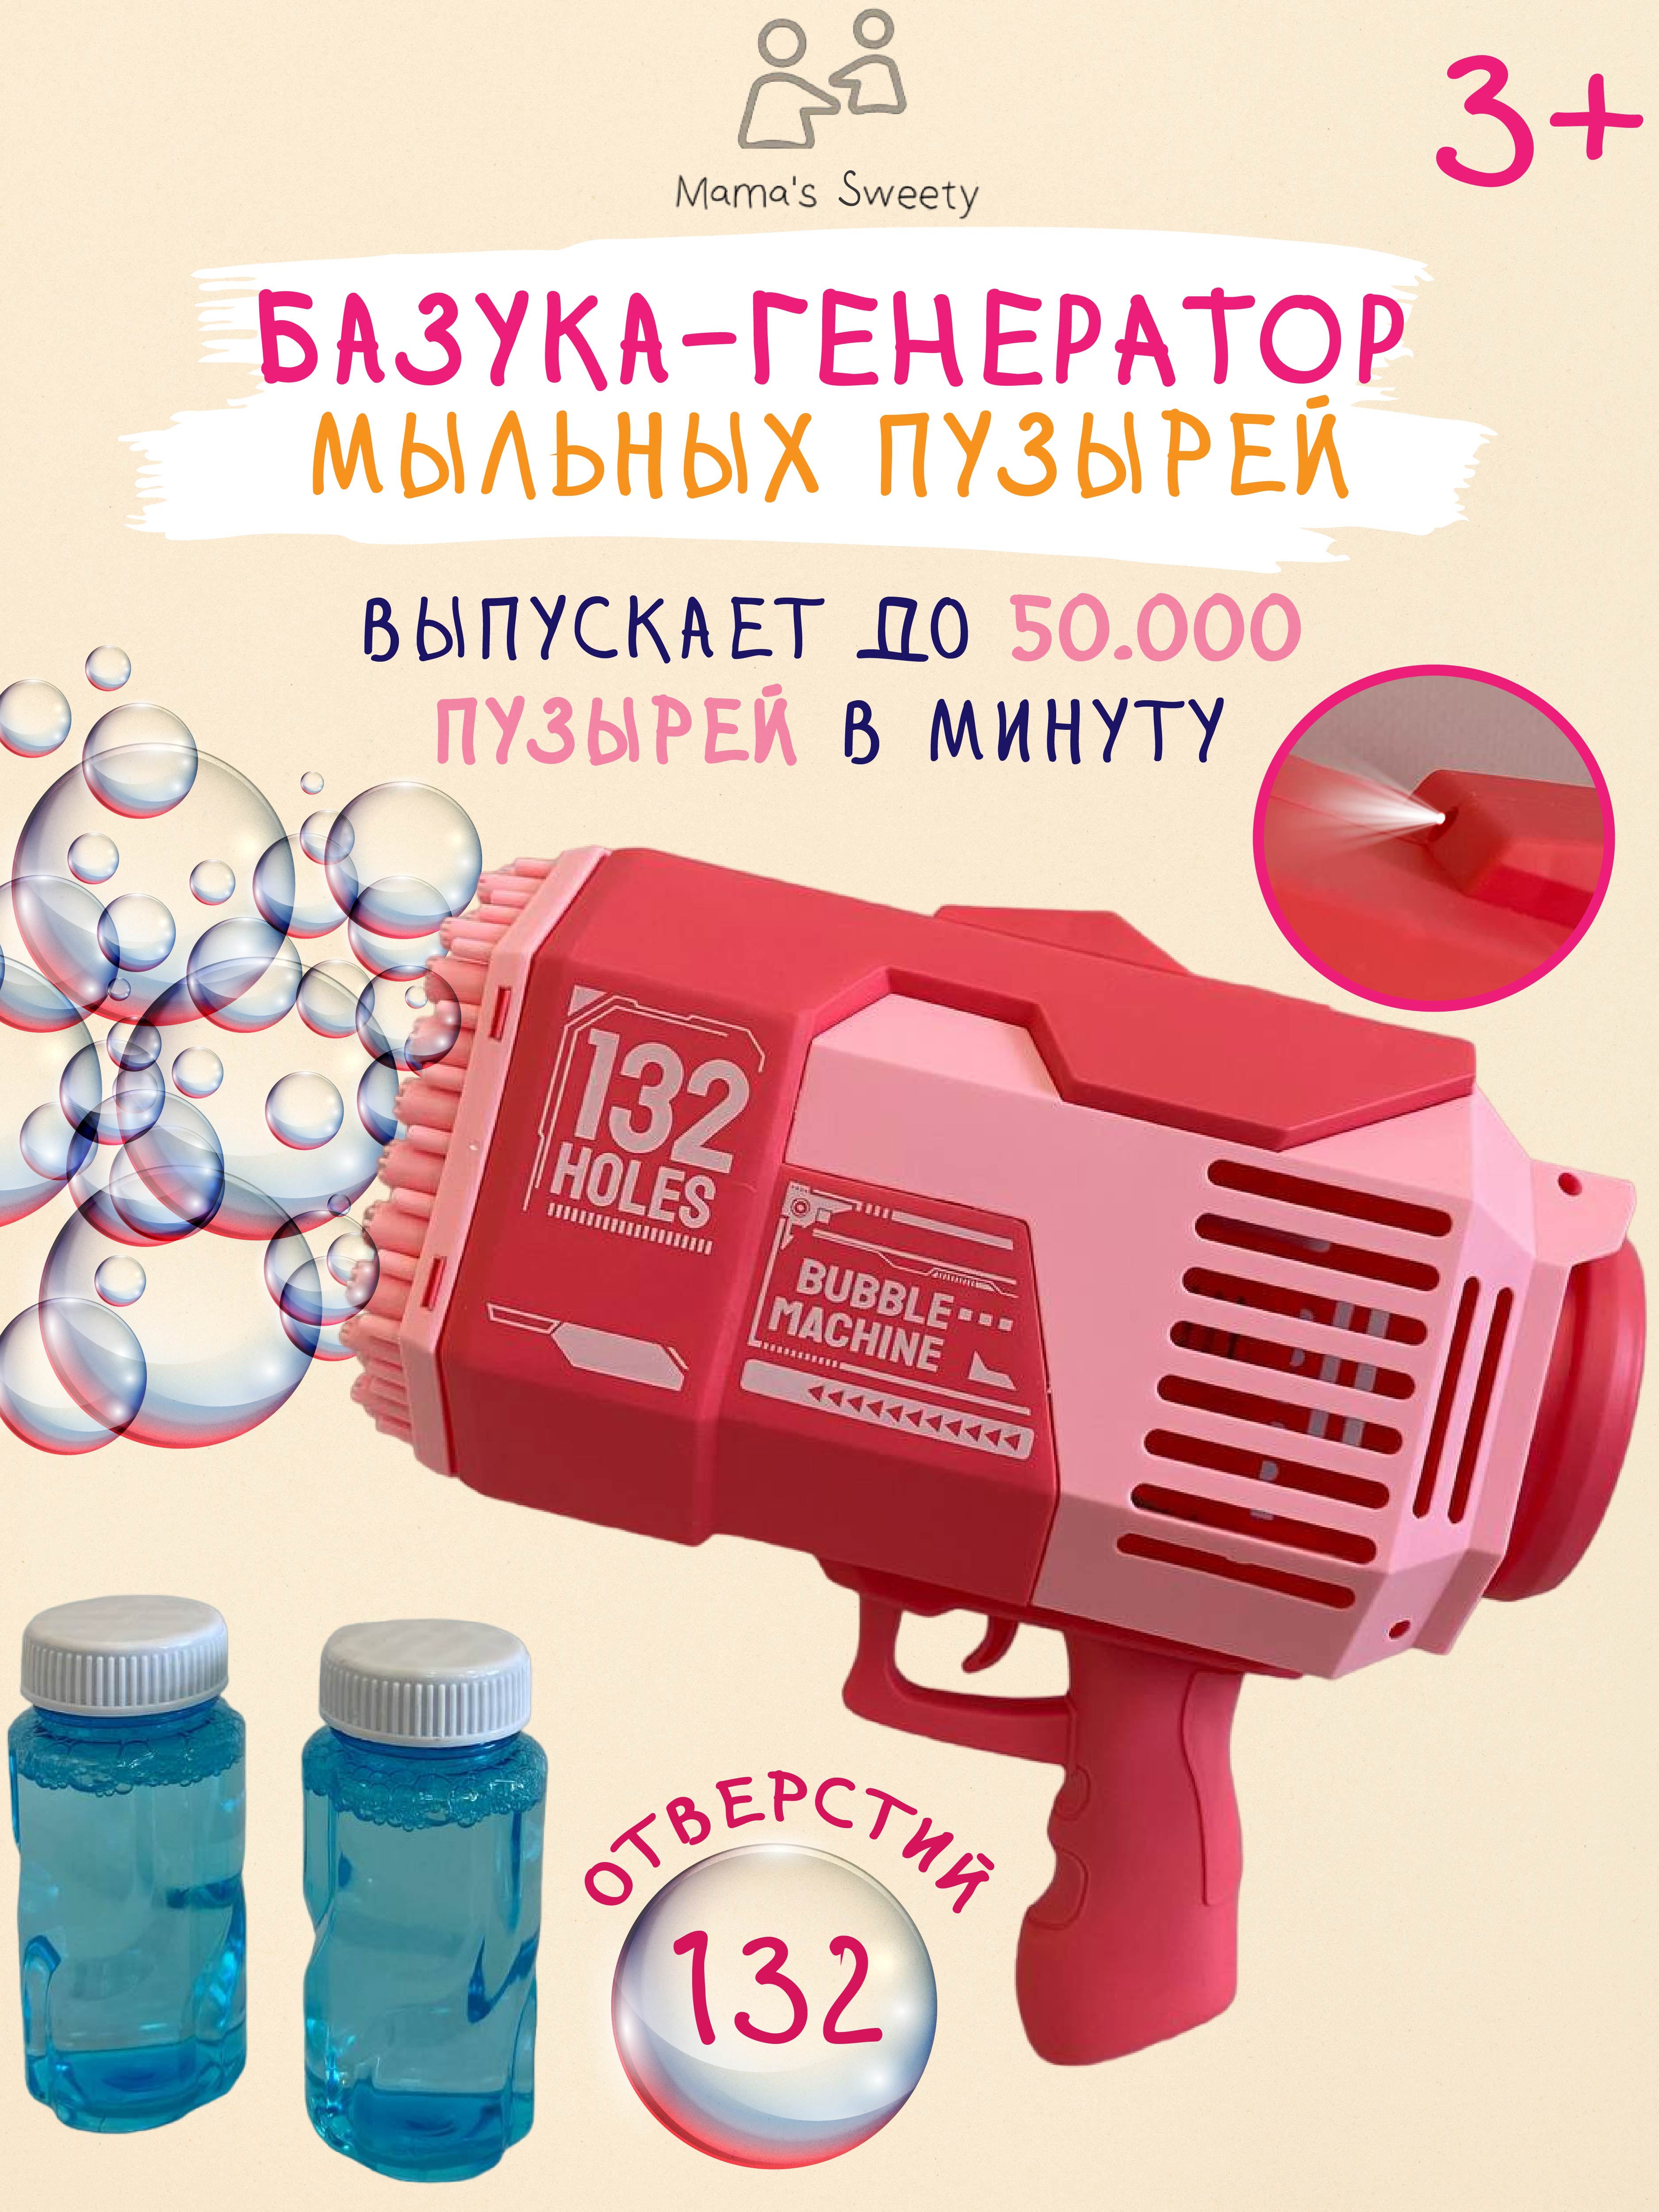 Базука-пистолет Mamas Sweety генератор мыльных пузырей розовый - фото 1